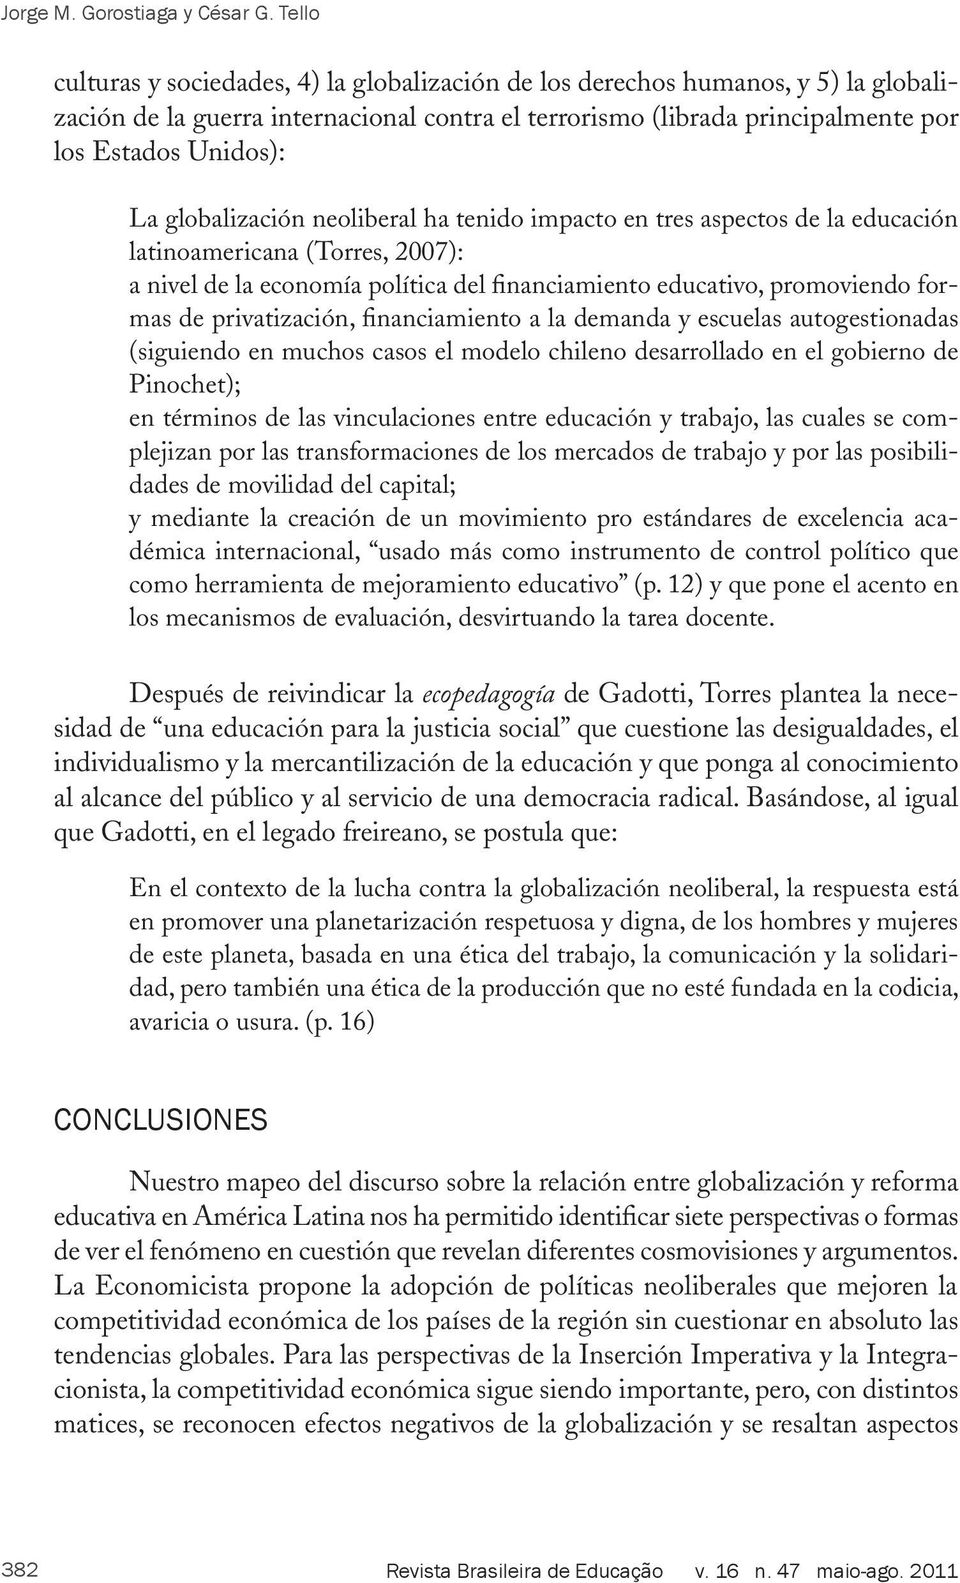 globalización neoliberal ha tenido impacto en tres aspectos de la educación latinoamericana (Torres, 2007): a nivel de la economía política del financiamiento educativo, promoviendo formas de